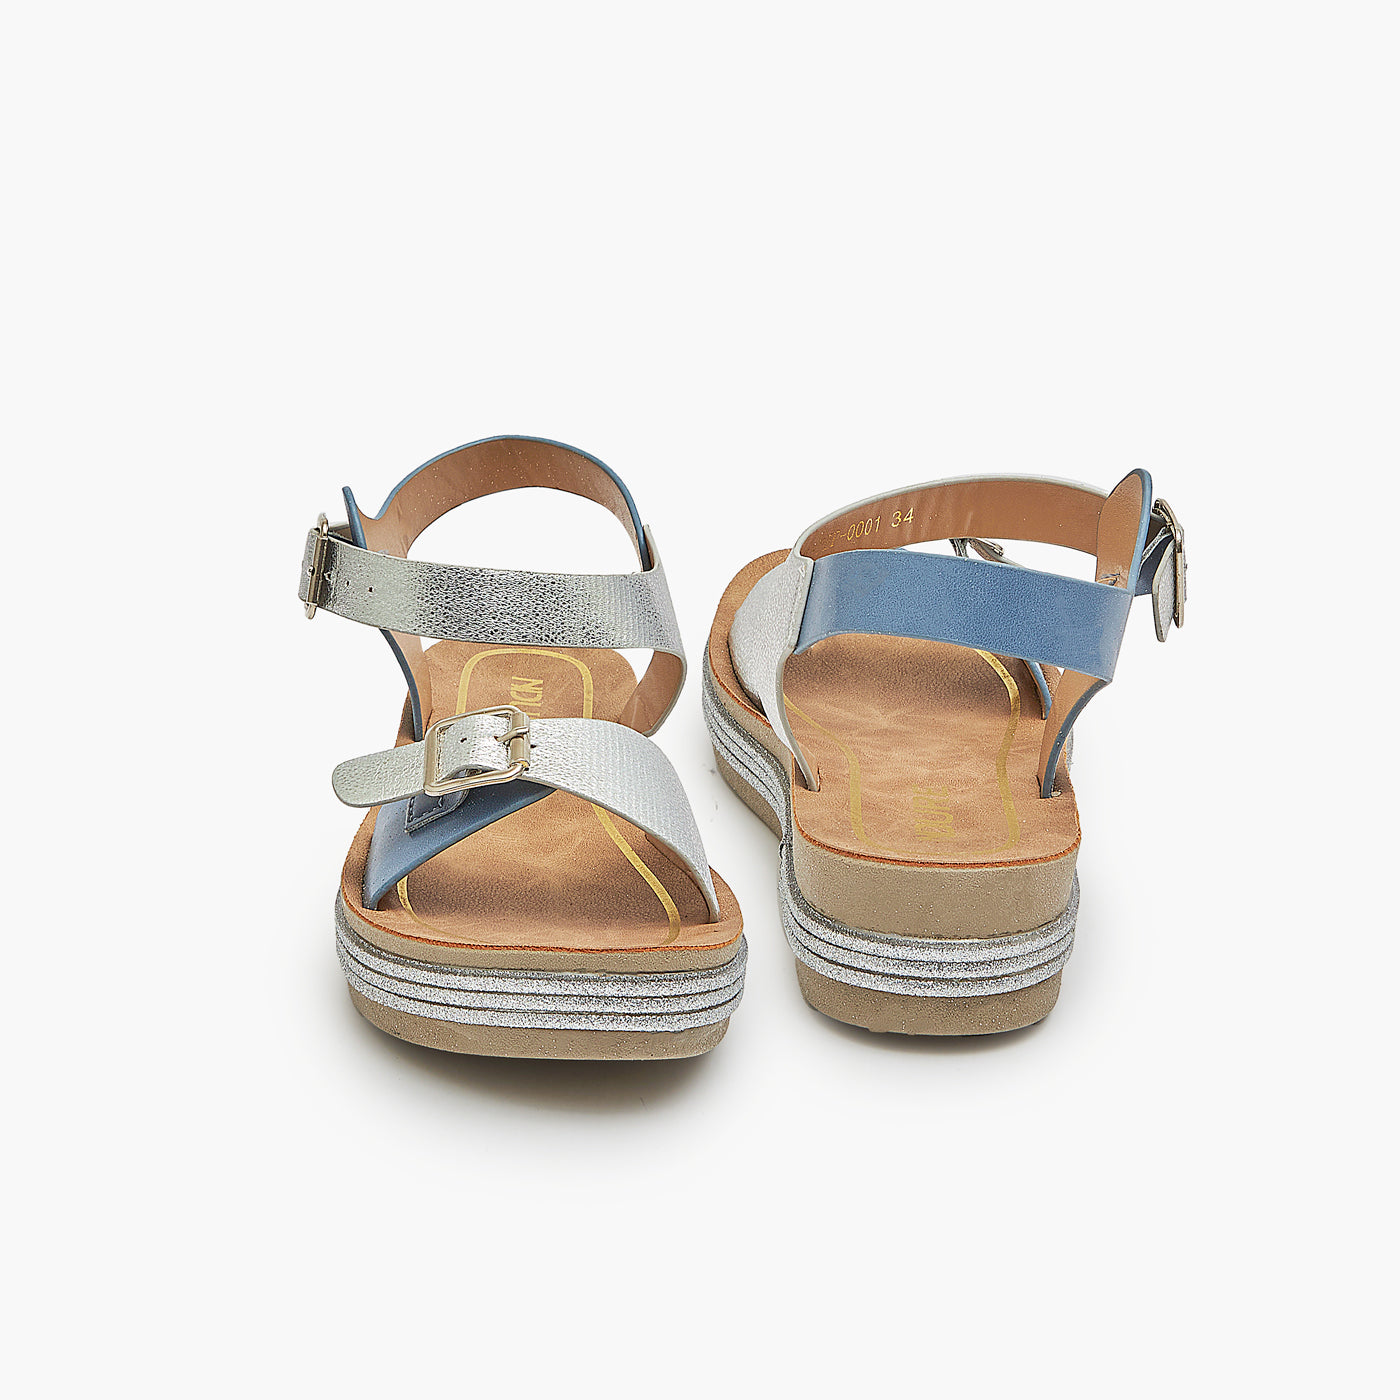 Platform Sandals for Girls